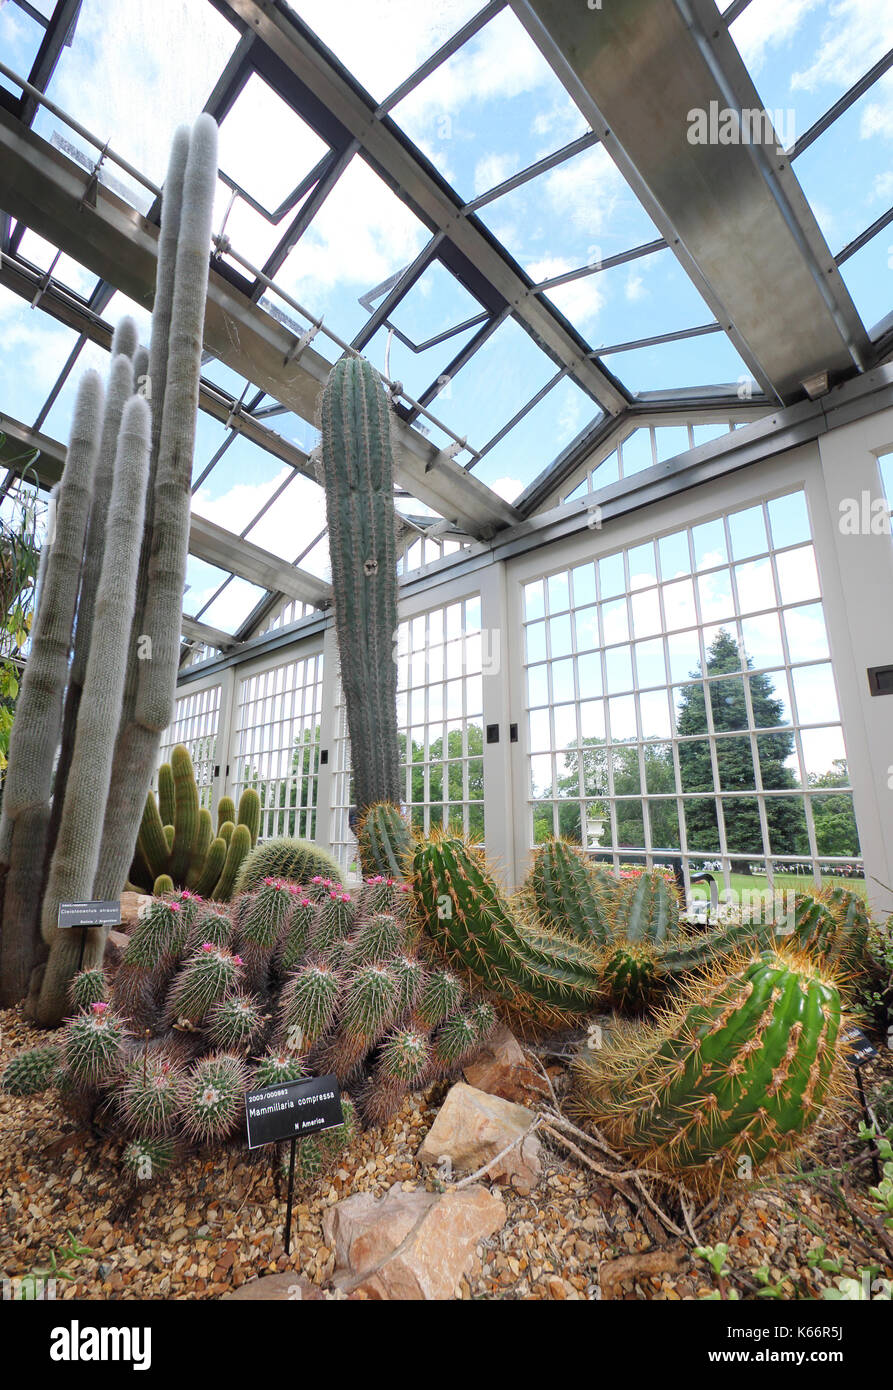 Cactus et succulentes affiché à l'époque victorienne, un majestueux pavillons en verre, serre à Sheffield Botanical Gardens, Sheffield, Yorkshire UK Banque D'Images